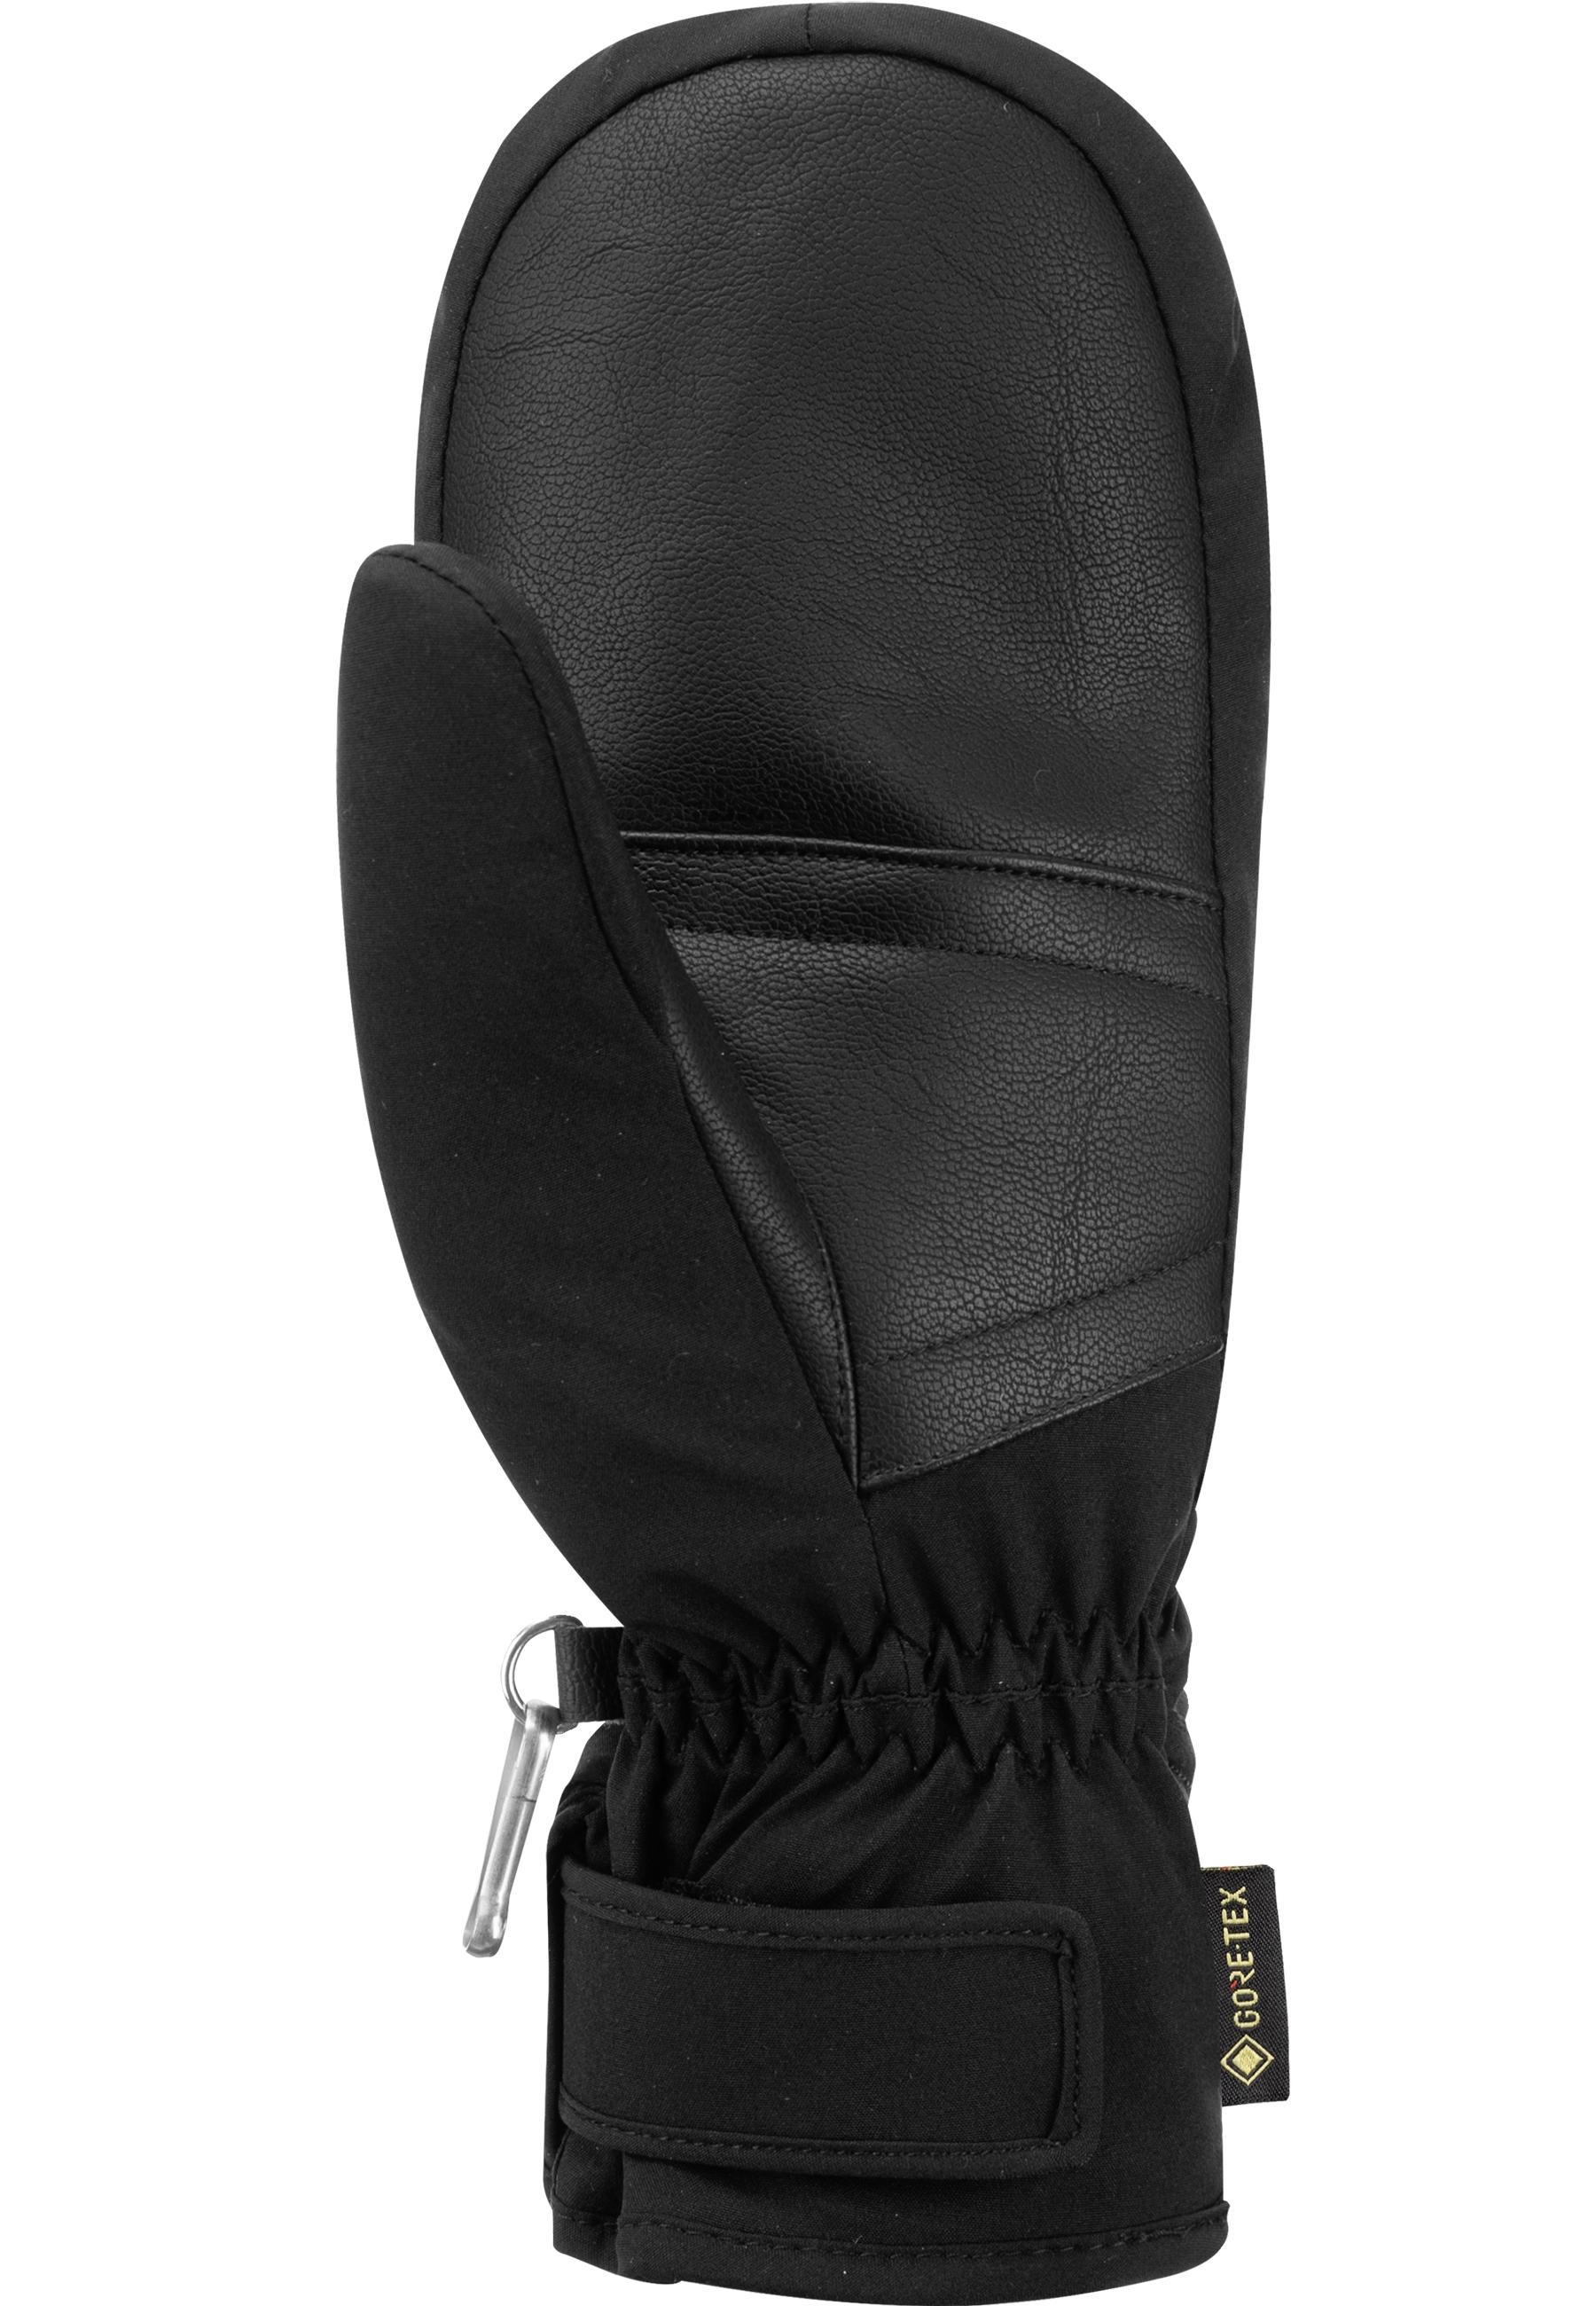 Reusch Susan GORE-TEX Mitten Outdoorhandschuhe von im Online black Shop SportScheck 7700 kaufen